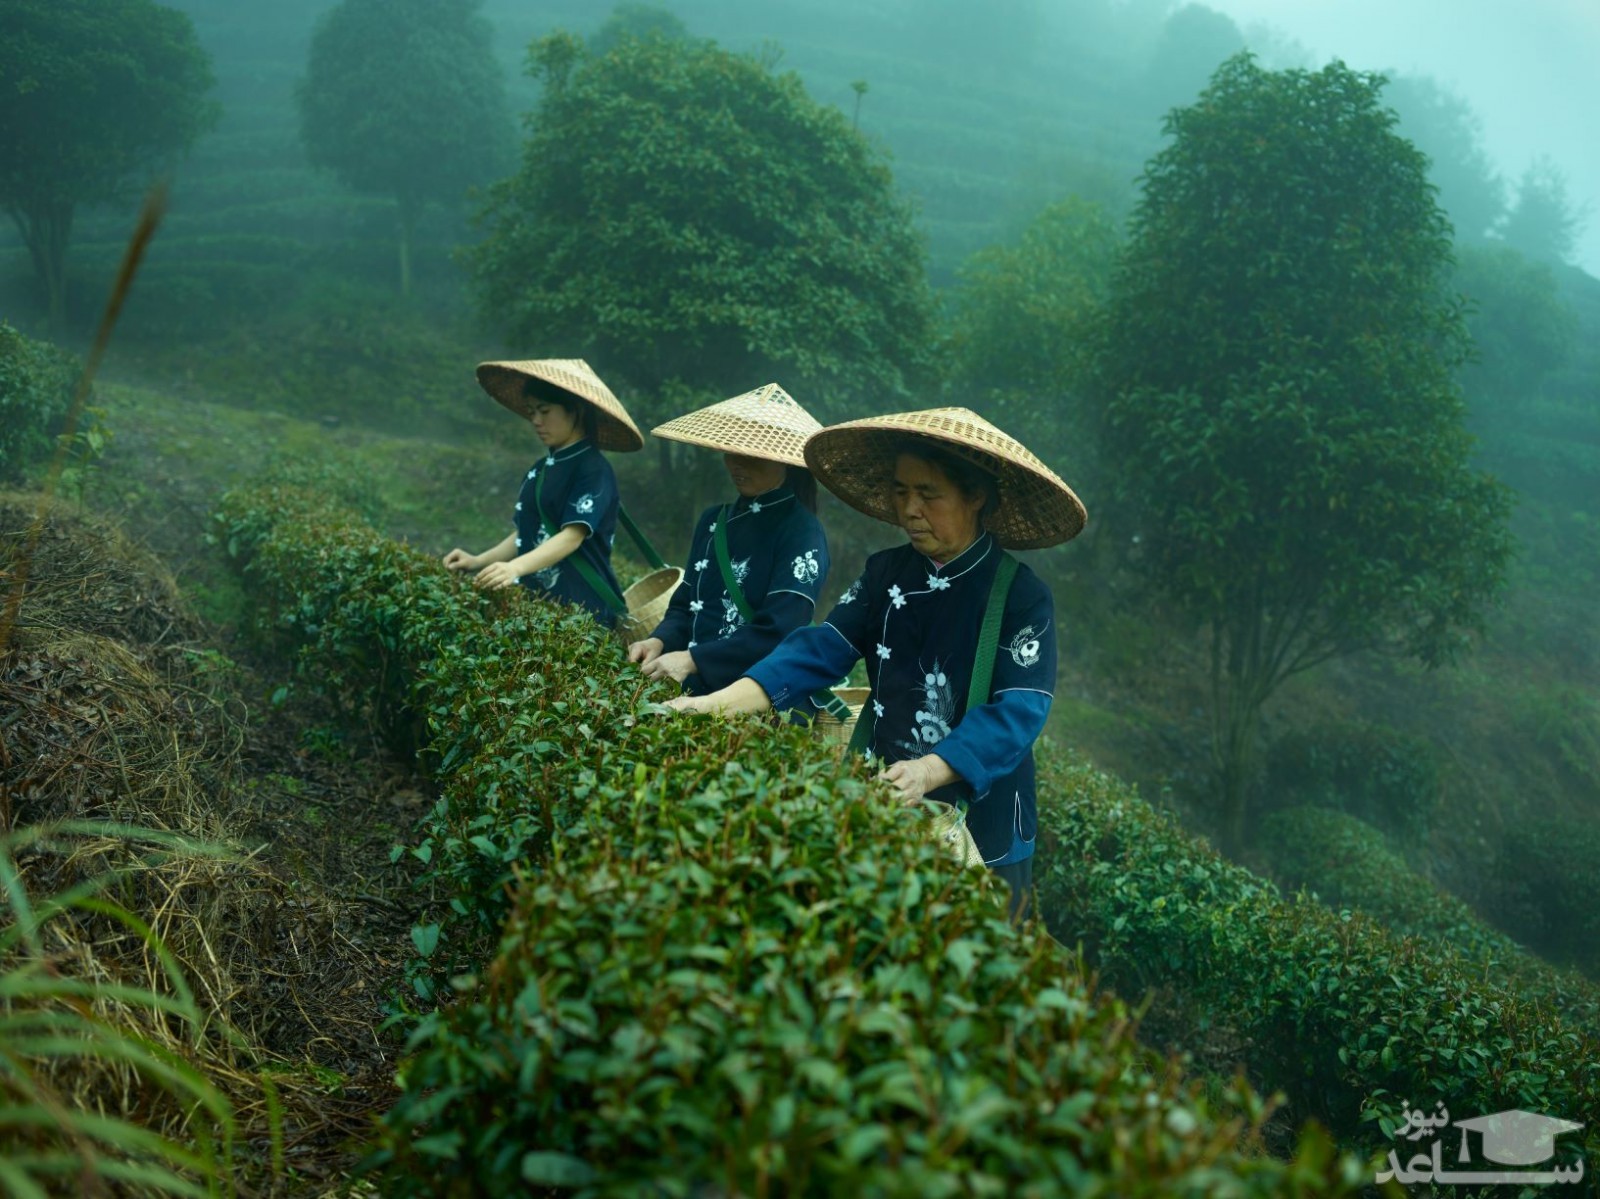 مزرعه چای در چین